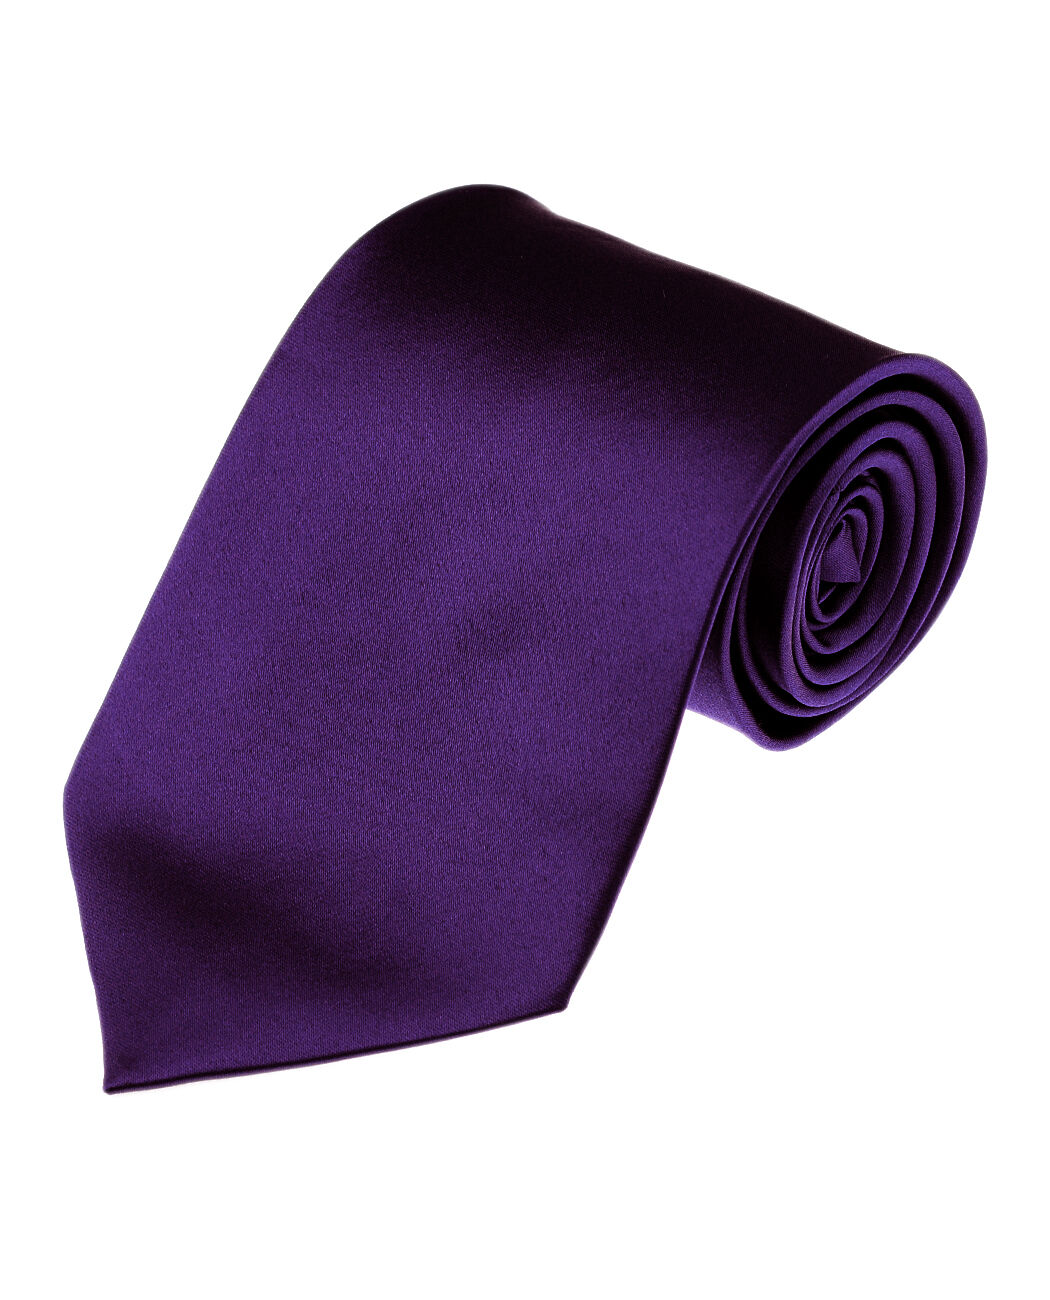 Color:103-Eggplant:Manzini Neckwear New Hot Trend! Solid Color Plain Classic Necktie Men's Tie 